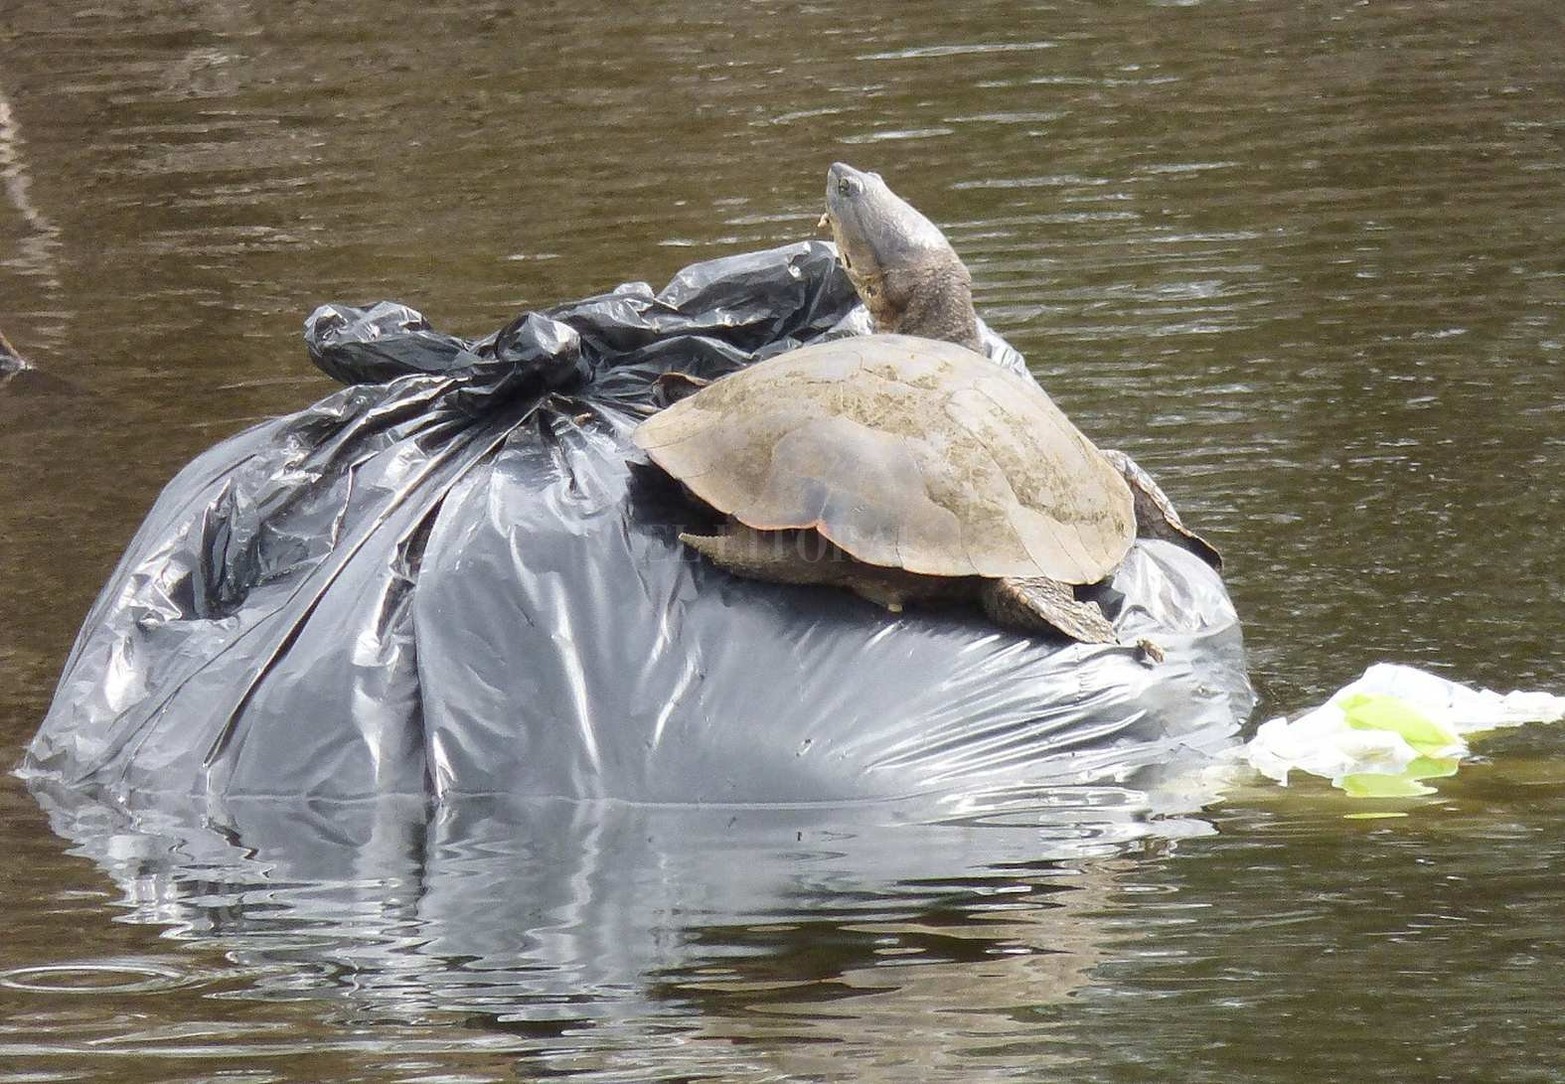 Tortuga de laguna ( Phrynops hilarii) utilizando una bolsa de basura flotante como lugar para asolearse.